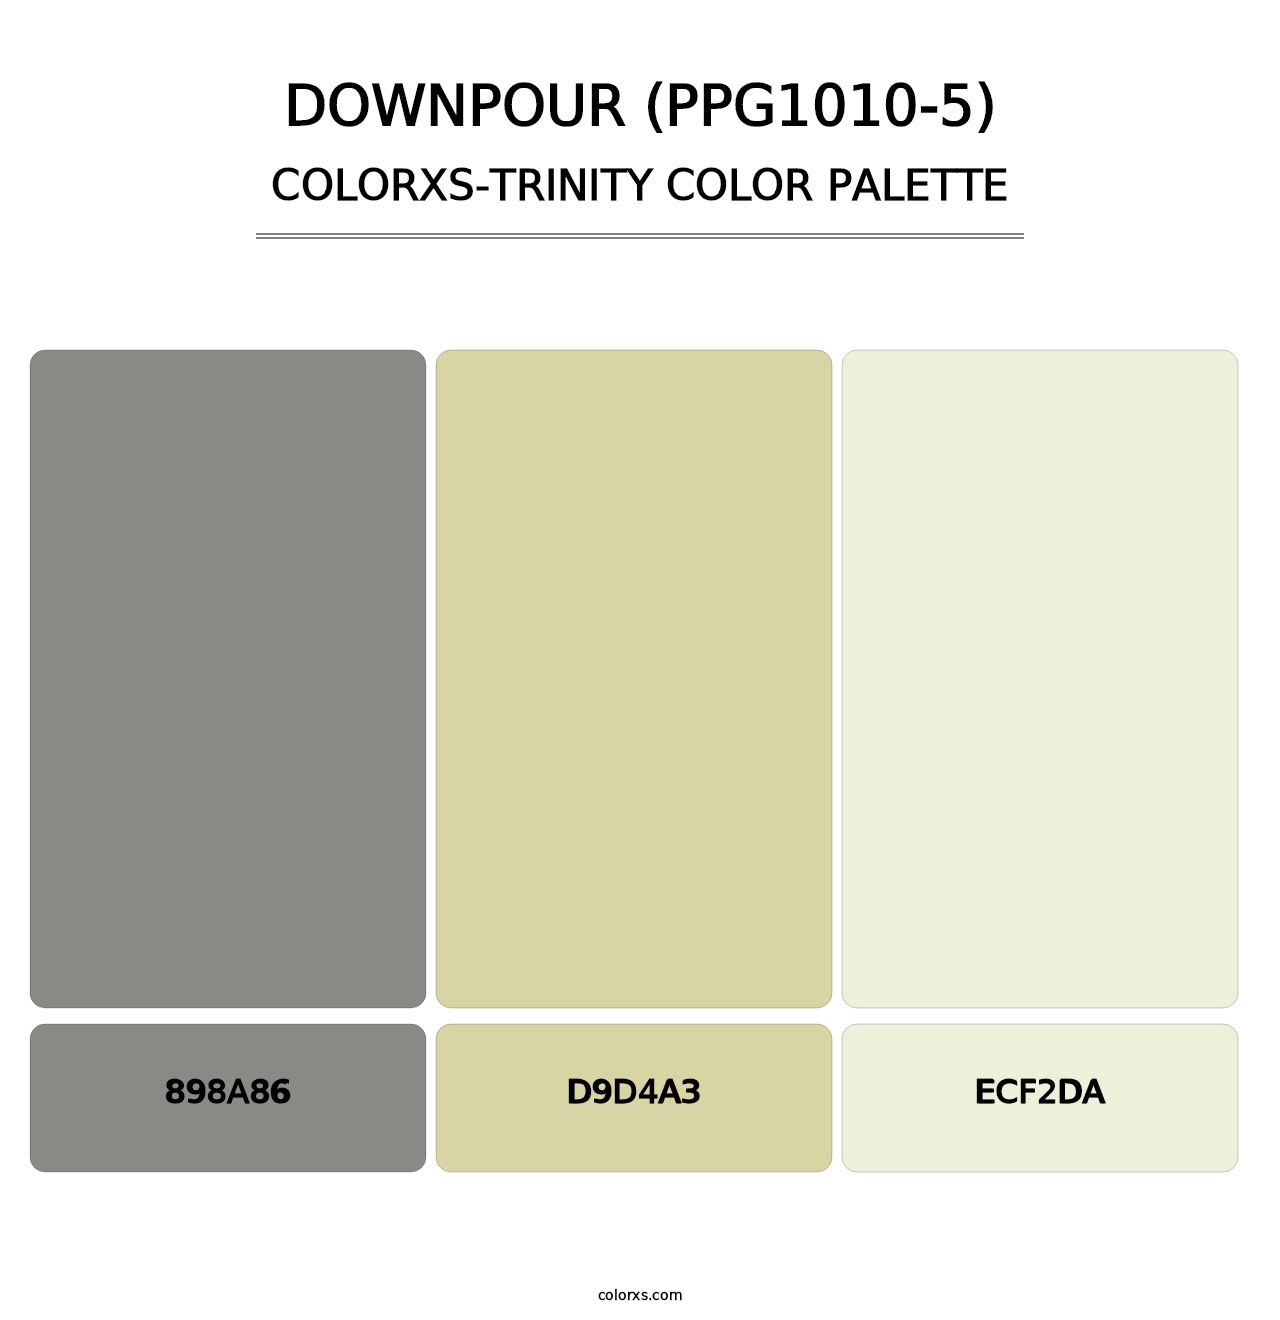 Downpour (PPG1010-5) - Colorxs Trinity Palette